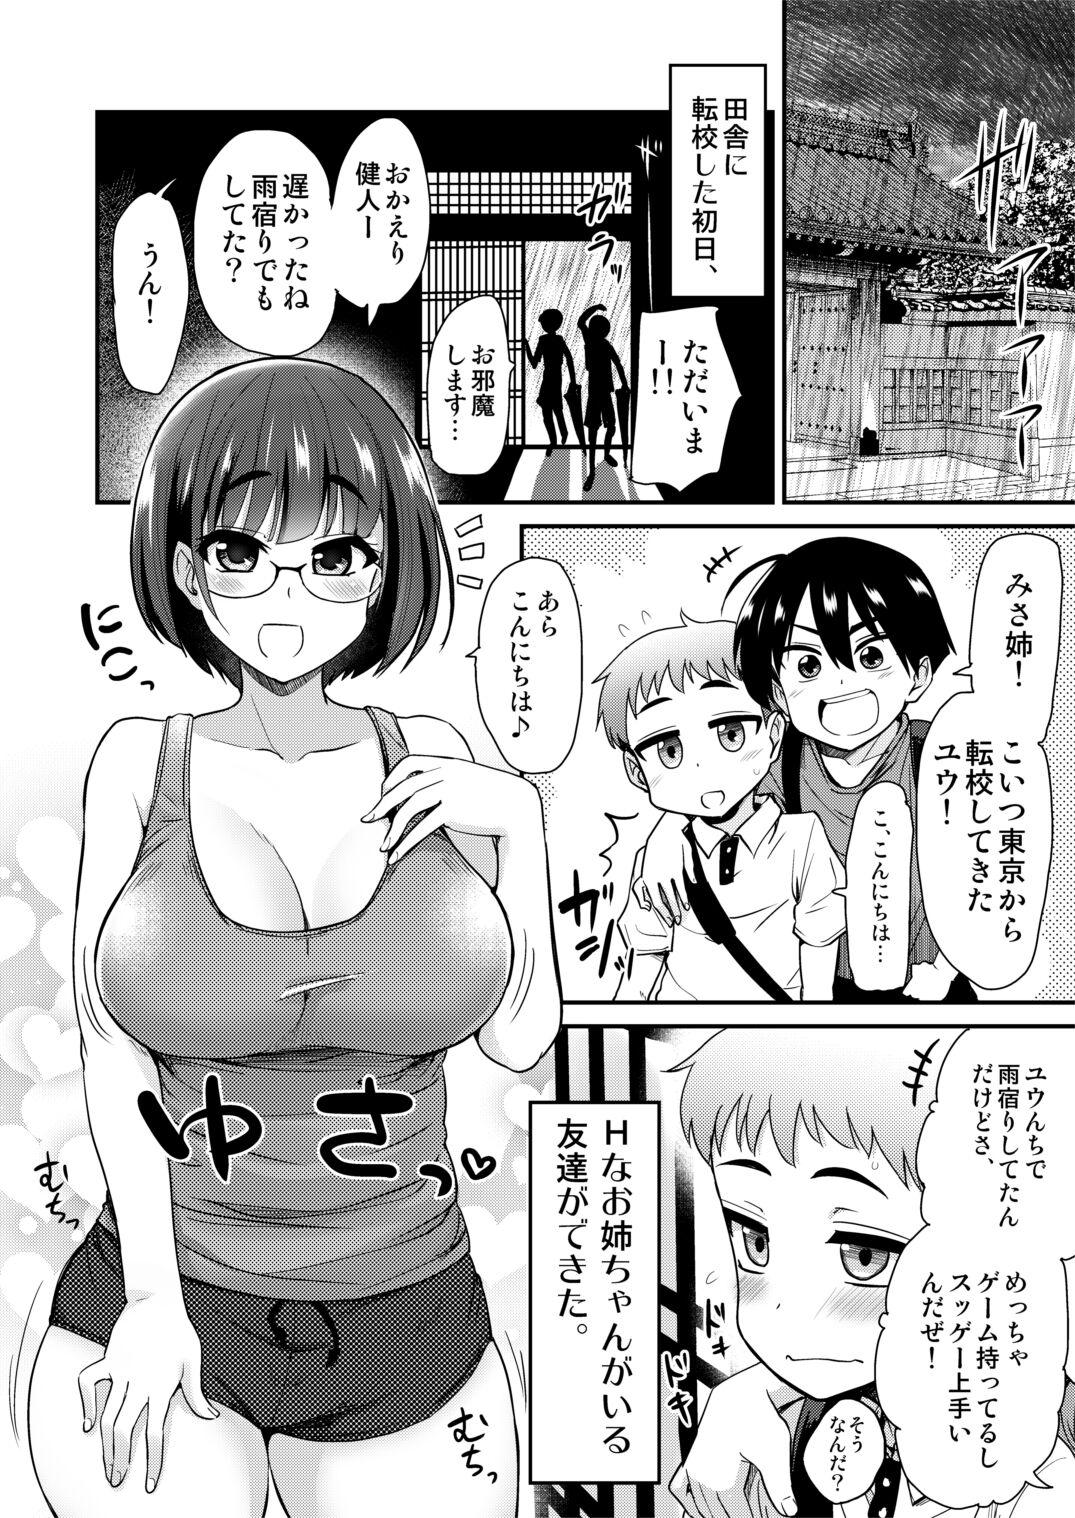 Leaked Nakayoshi no Hi. Hikkoshita Saki no Inaka no Fuushuu de, Tomodachi no Onee-chan to Sex suru Hanashi. - Original Pegging - Page 2